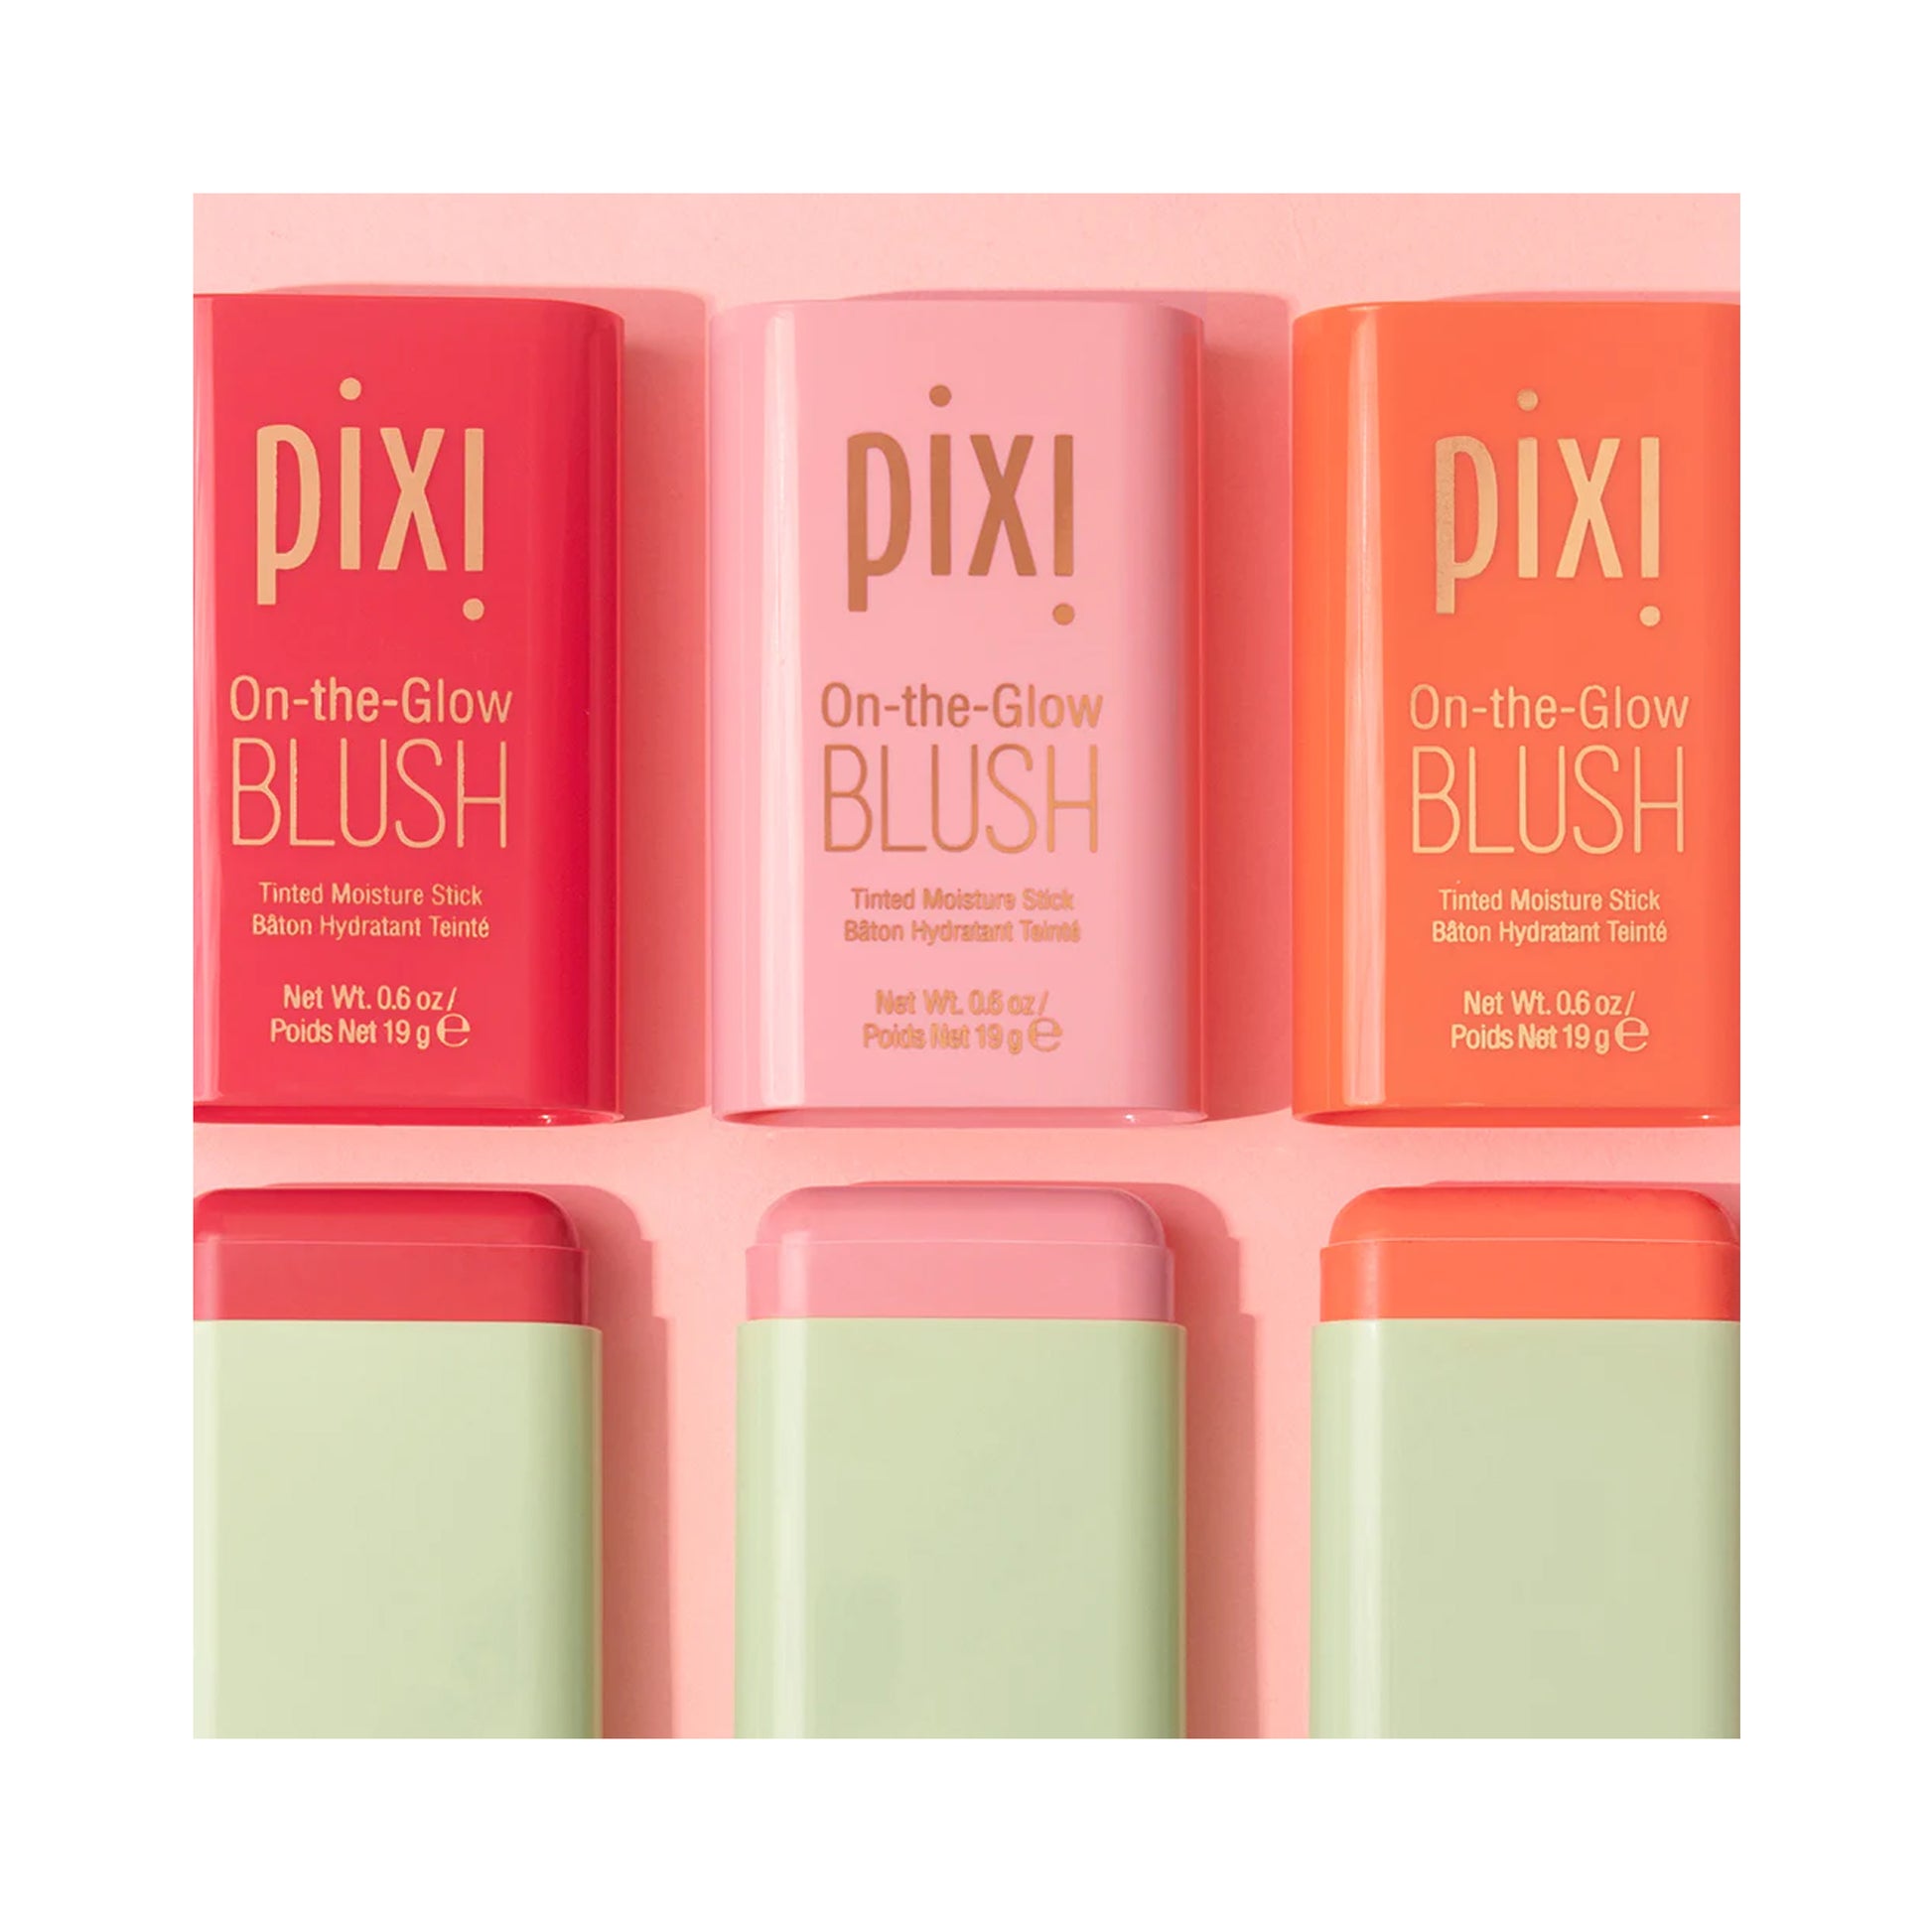 Pixi Beauty On-the-Glow Blush